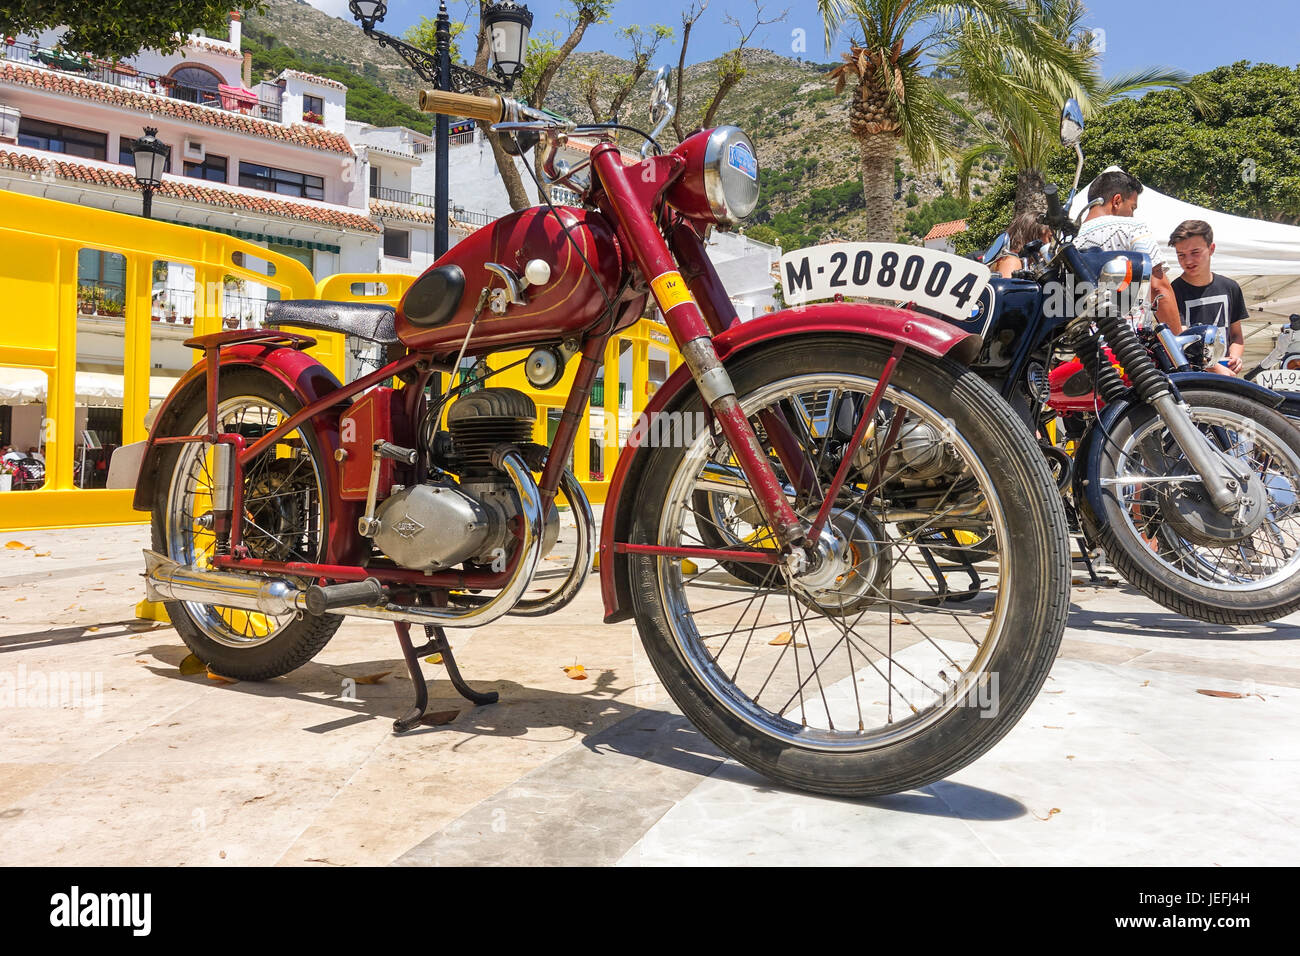 Une lubrification99 espagnol 150cc, vélo classique sur l'affichage à une moto classique rencontre à Mijas, Andalousie, espagne. Banque D'Images